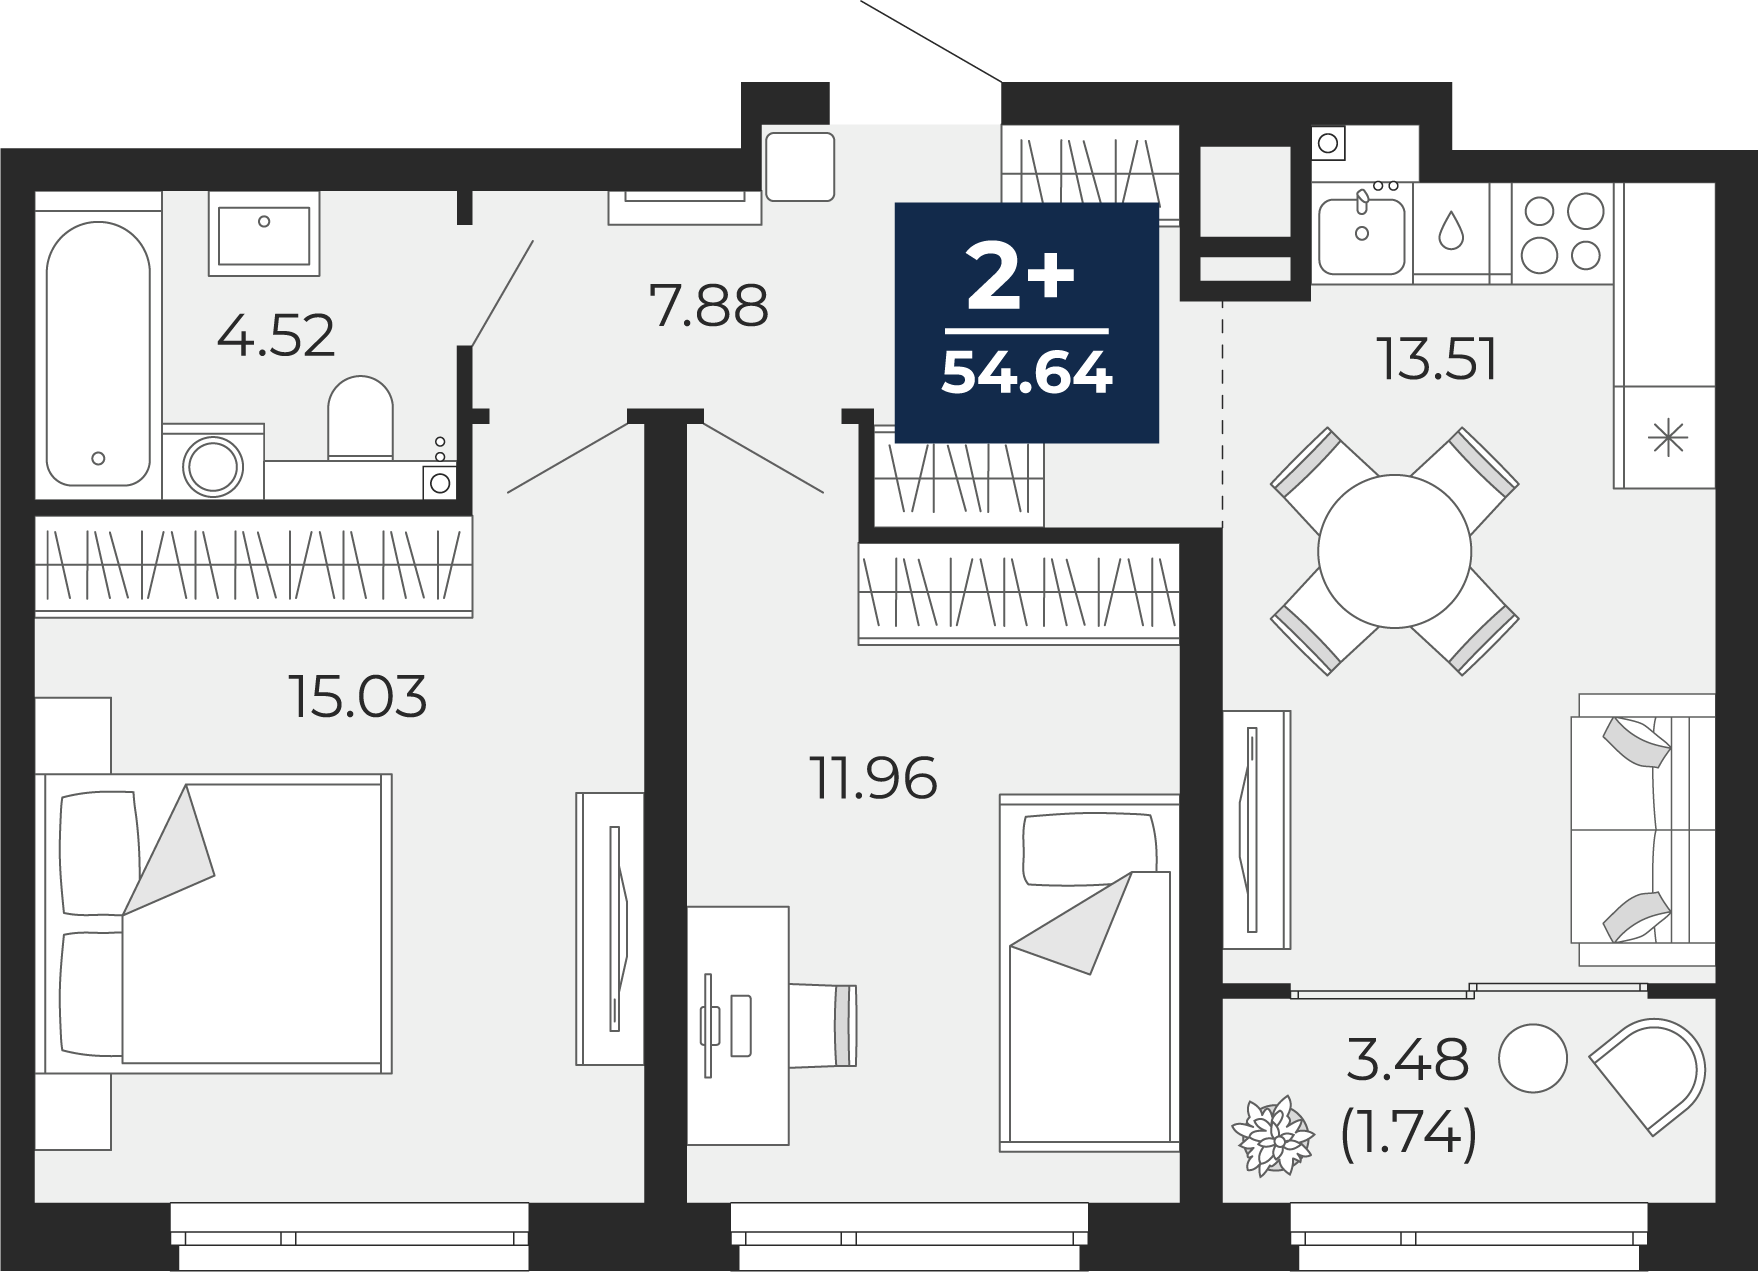 Квартира № 307, 2-комнатная, 54.64 кв. м, 20 этаж